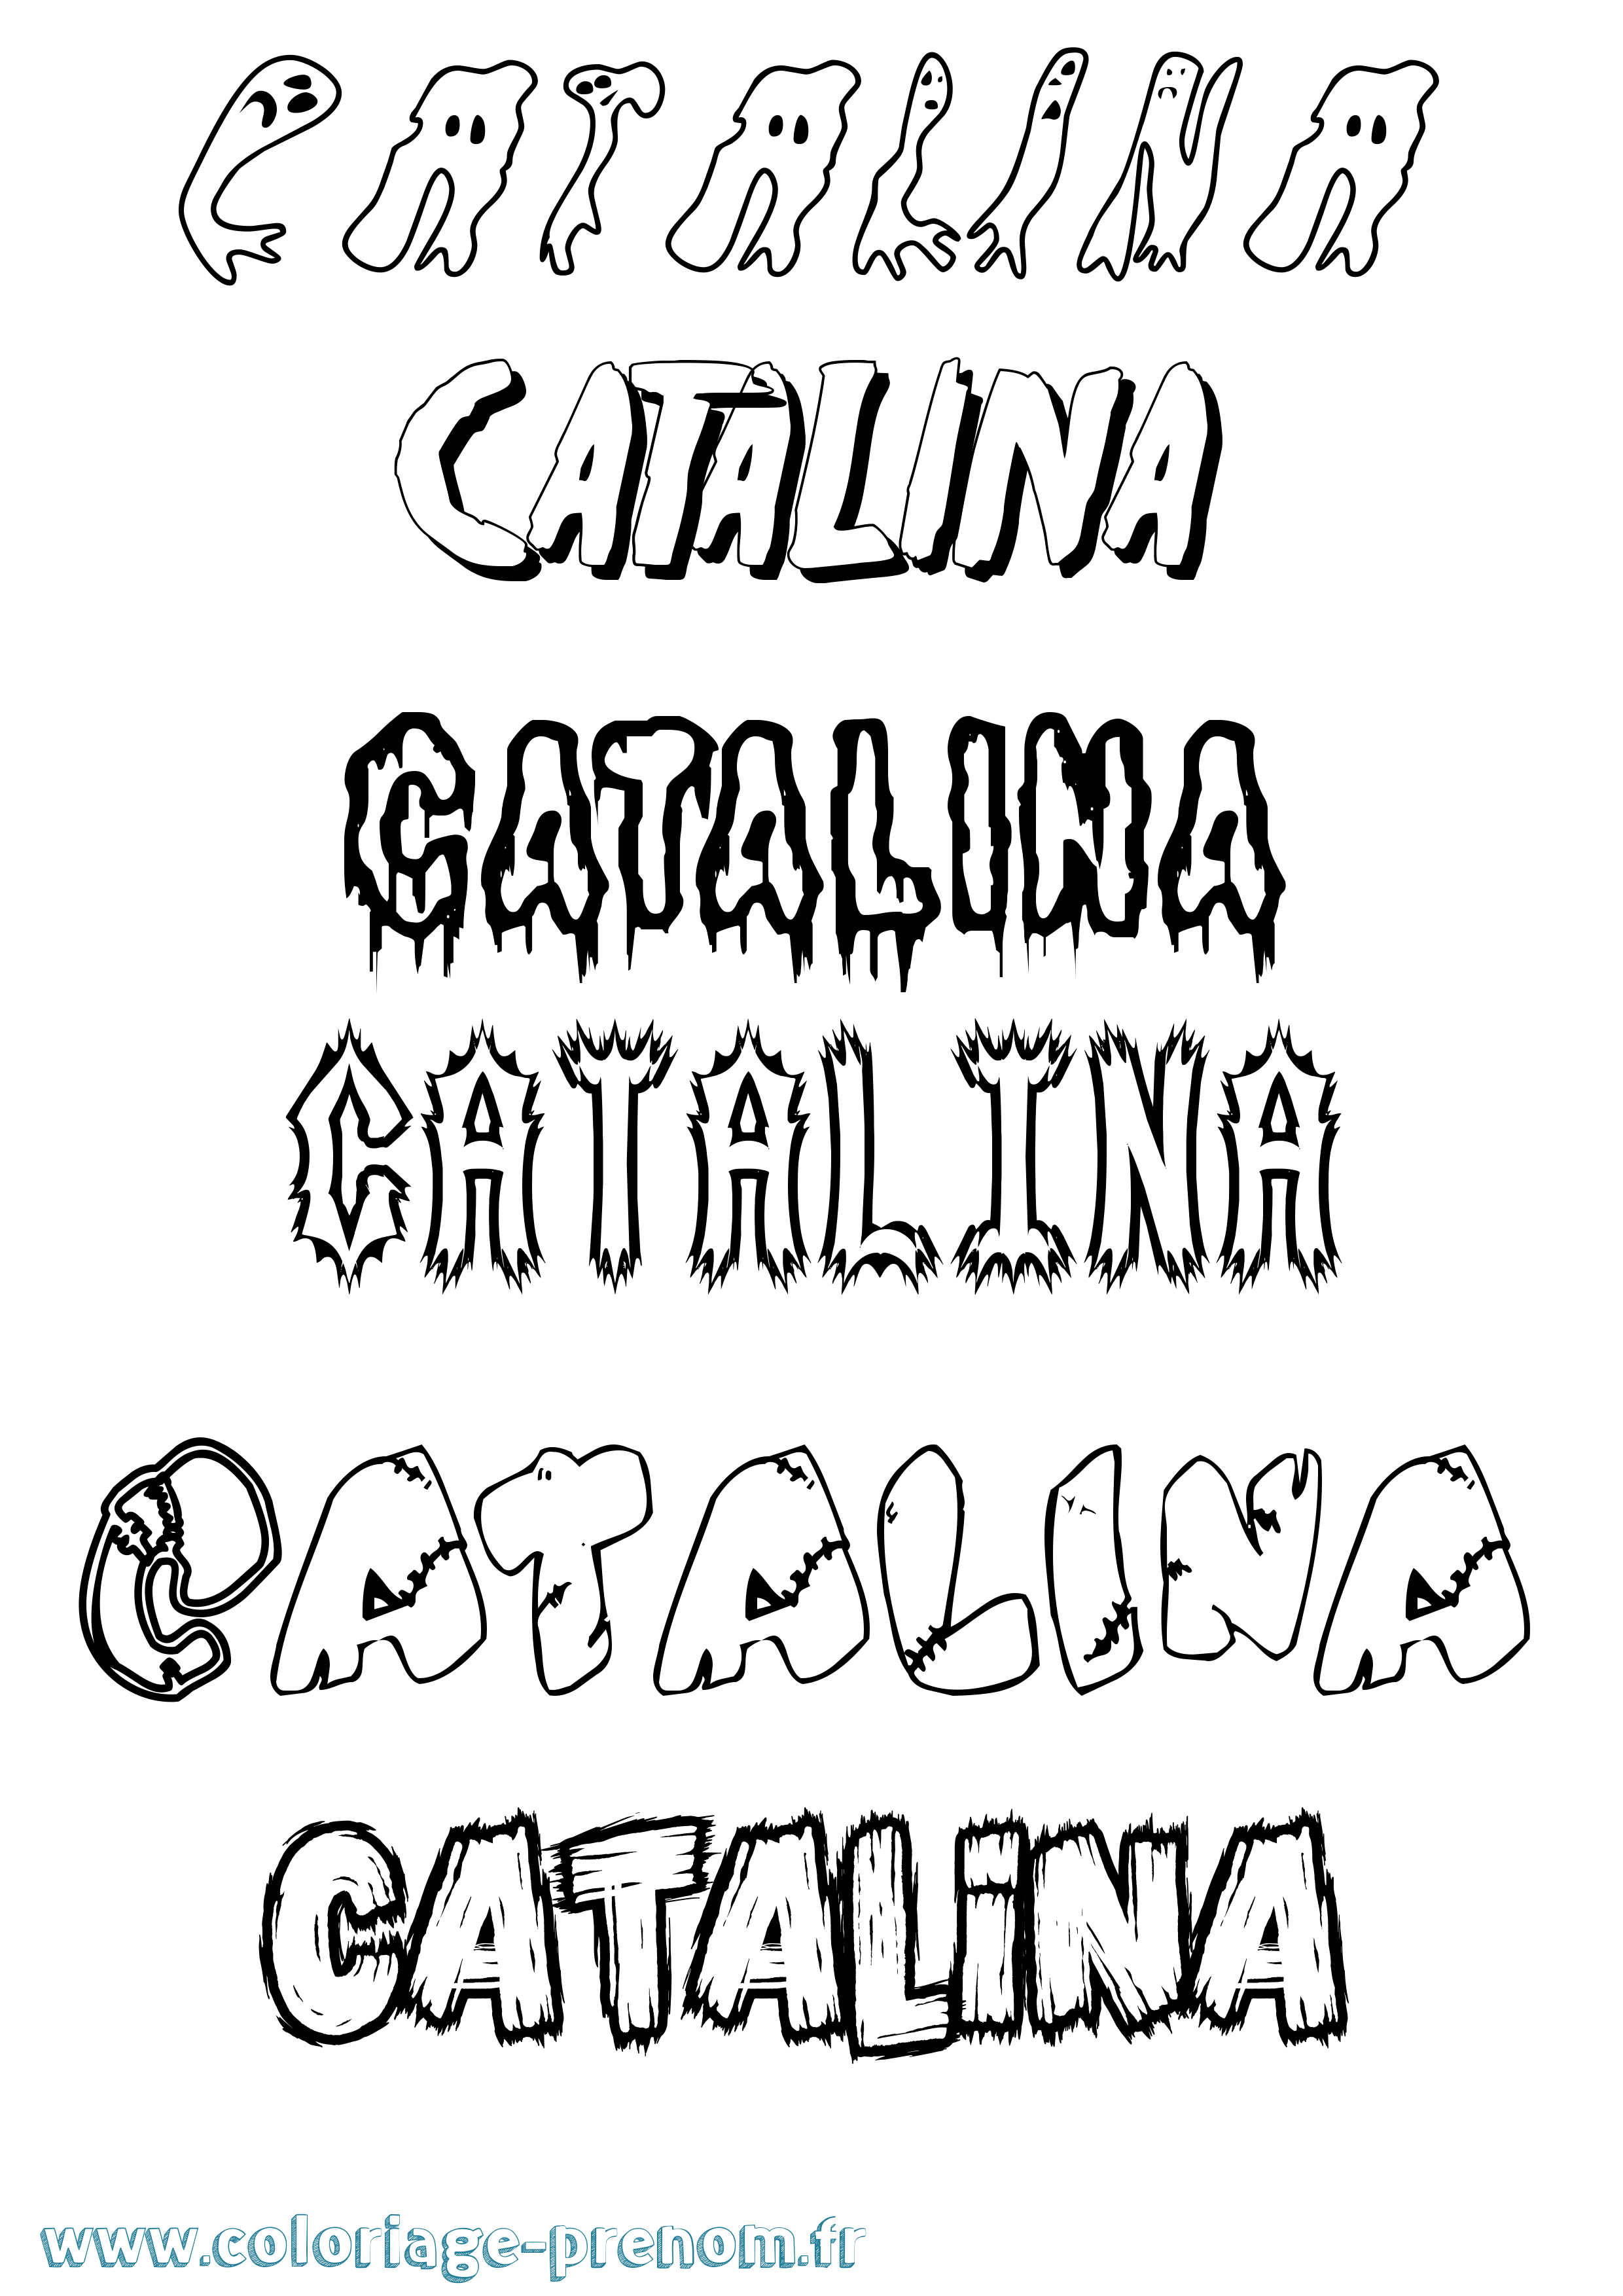 Coloriage prénom Catalina Frisson